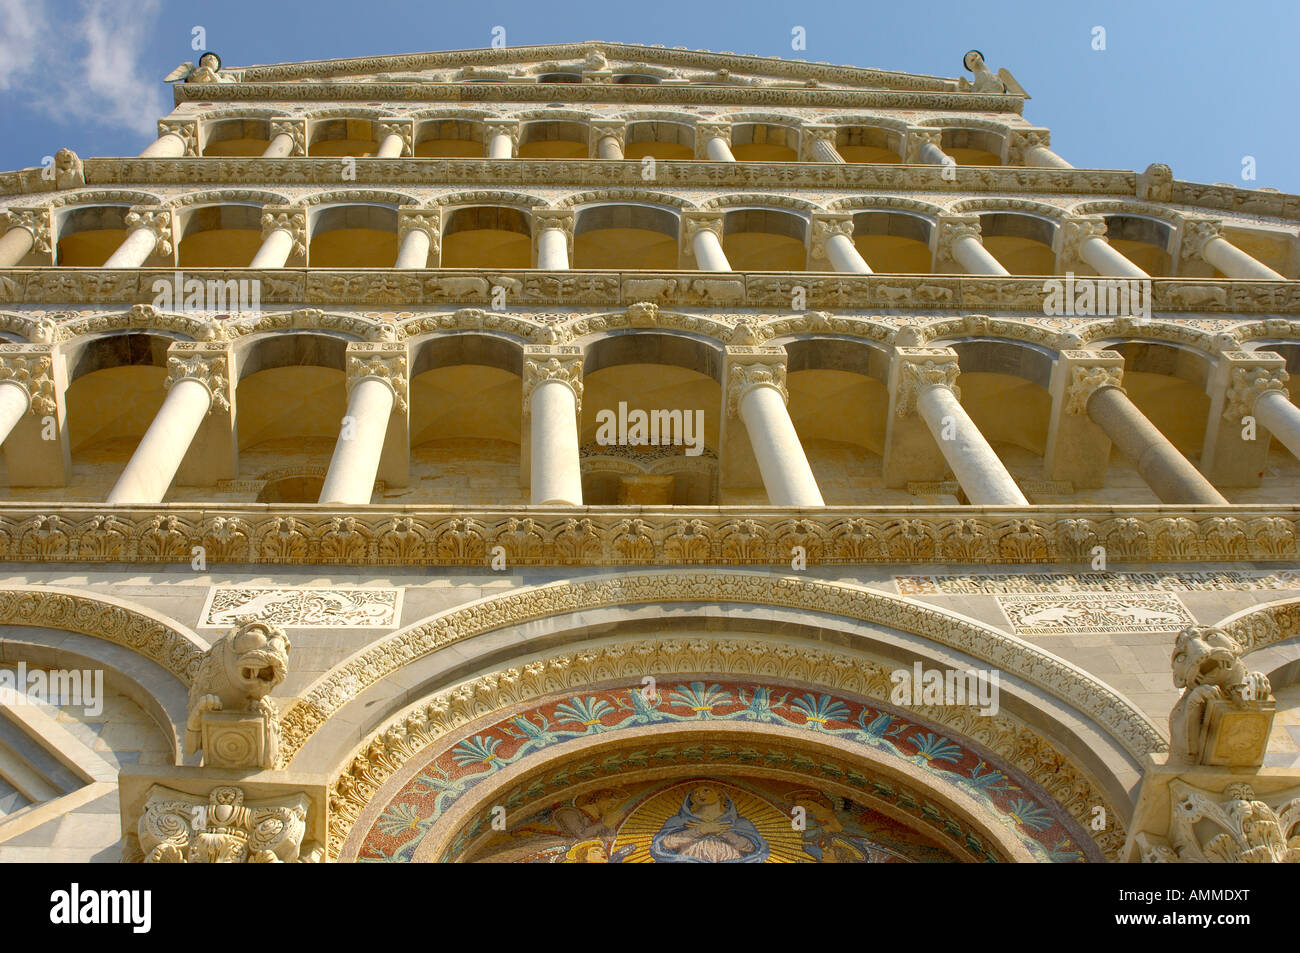 Vista del Duomo de Pisa arcos románicos en la fachada de la catedral. Piazza del Miracoli Pisa Italia Foto de stock